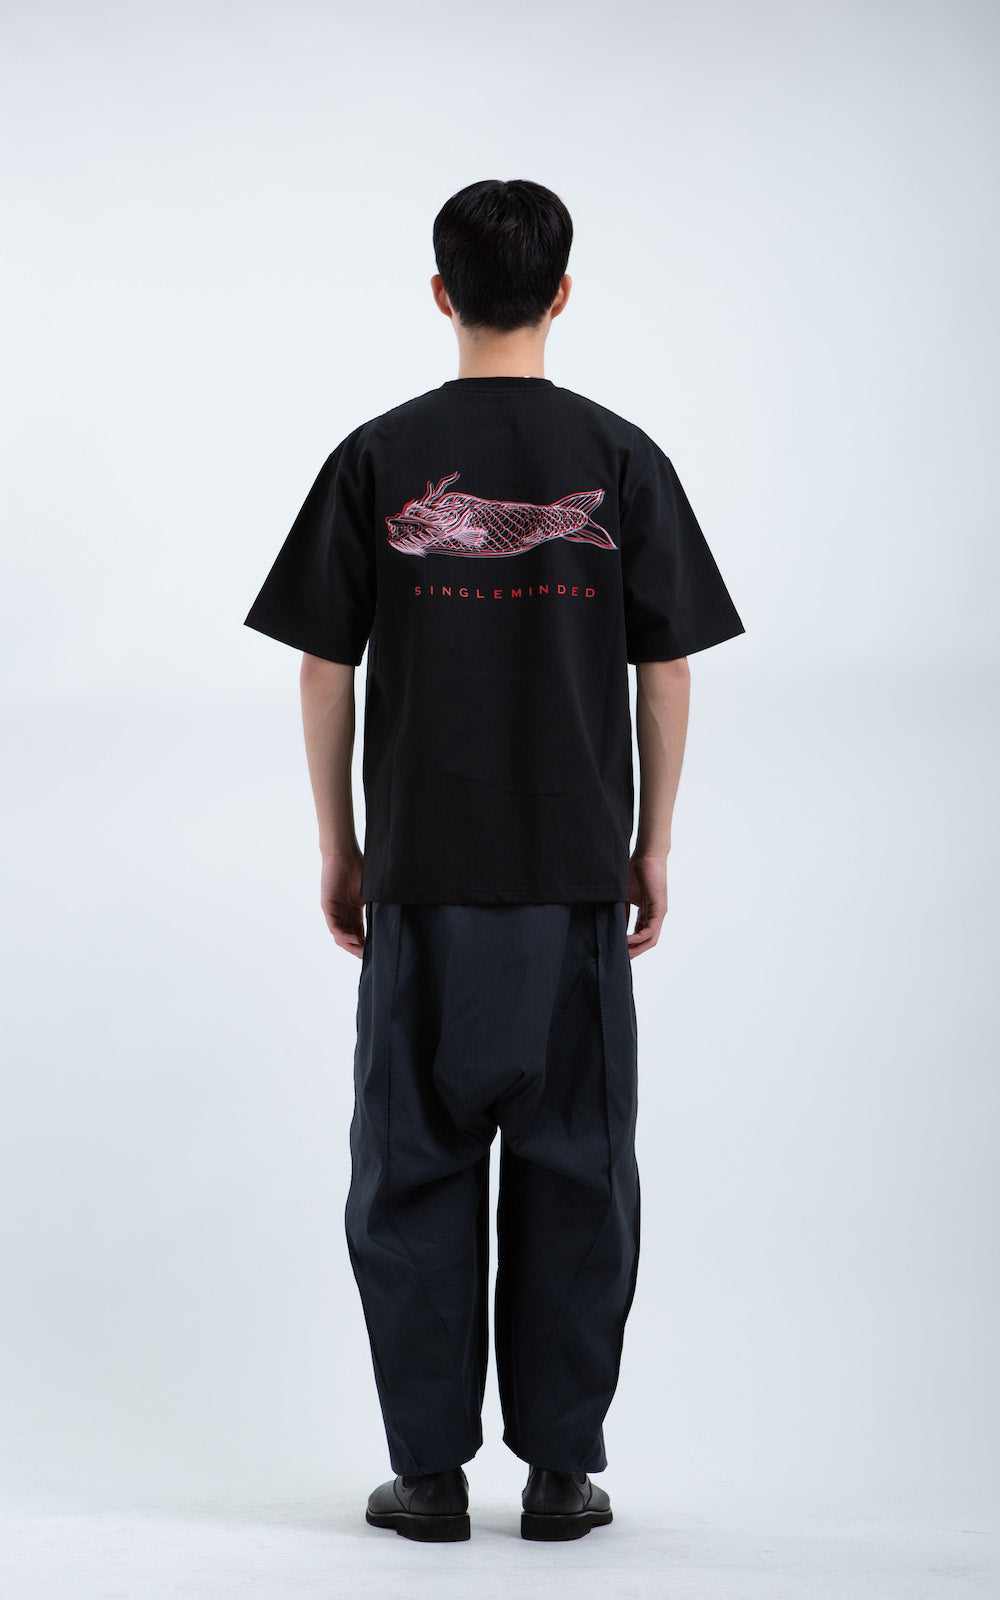 Dragon Fish T-shirt